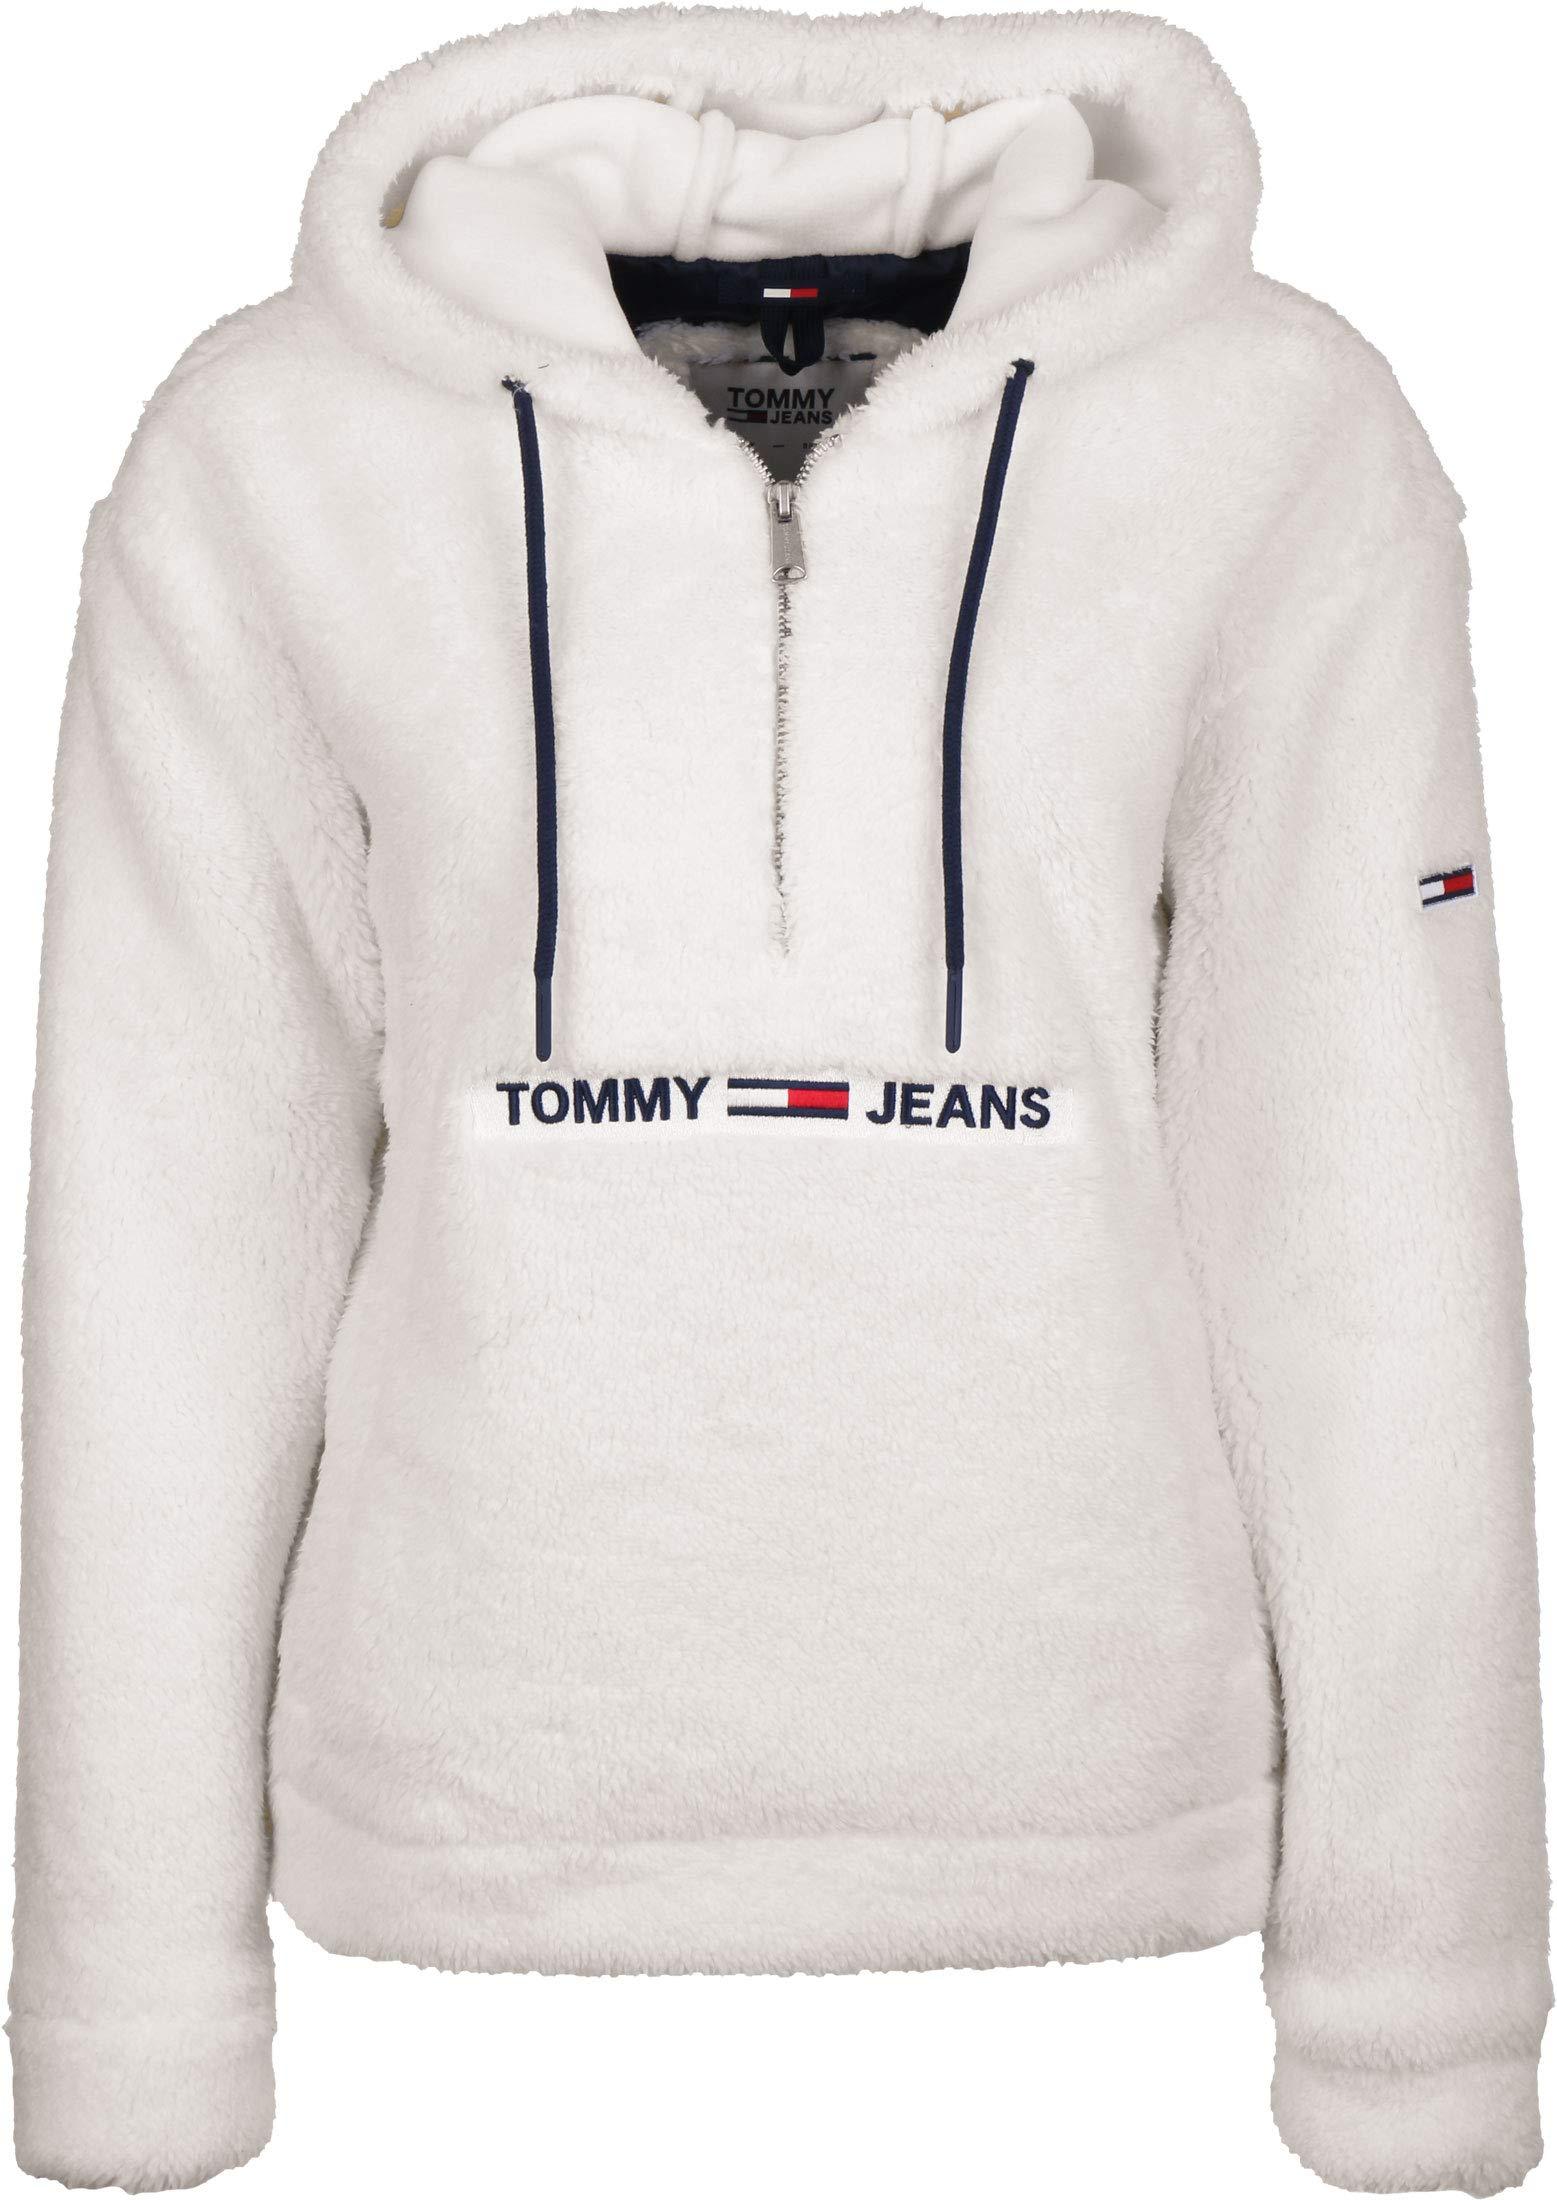 Tommy Hilfiger Pullover Jacket Stores, 44% OFF | evanstoncinci.org